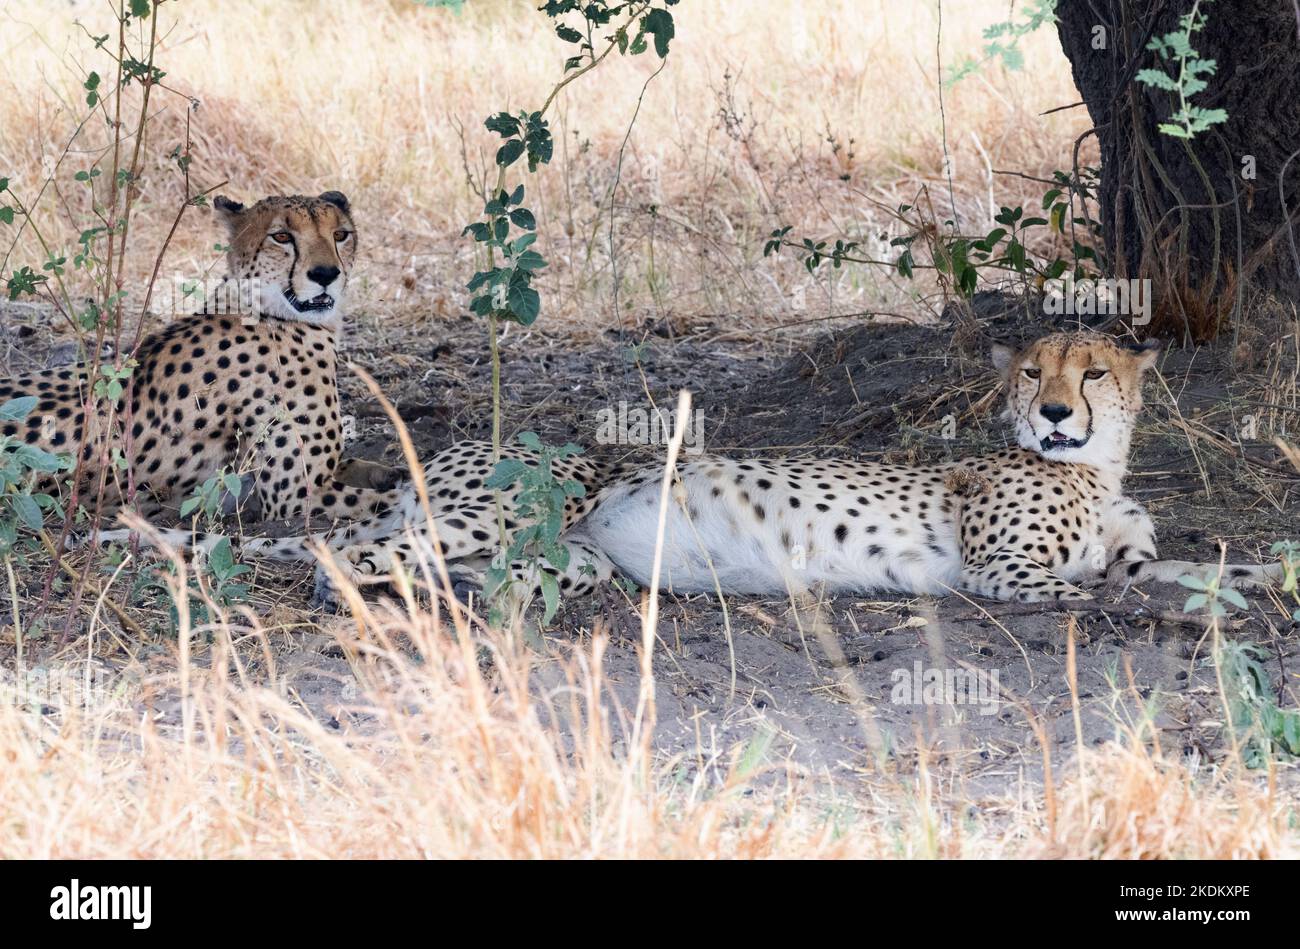 Deux guépards mâles adultes, Acinonyx jubatus dans la nature, parc national de Chobe, Botswana Afrique. Cheetah est un grand chat et un animal en voie de disparition. Banque D'Images